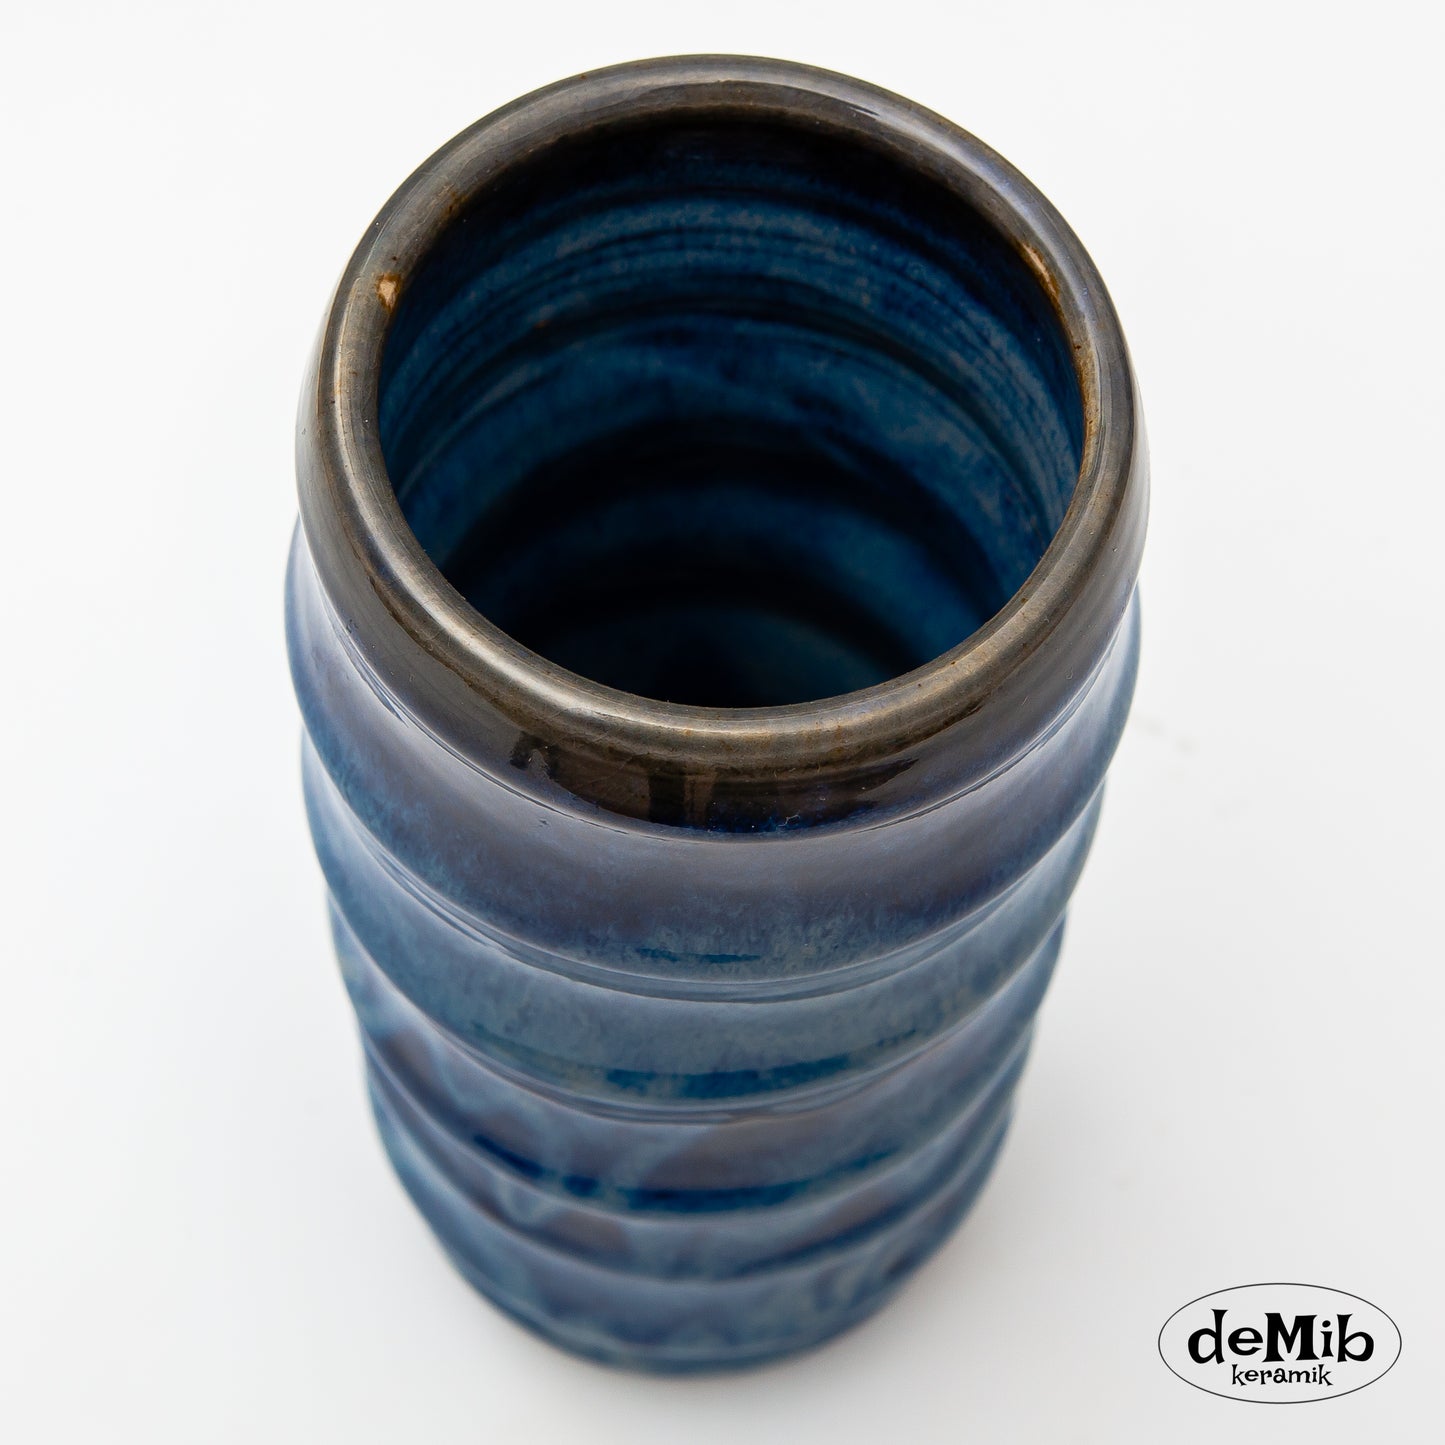 Floating Blue Bamboo Shaped Vase (22 cm)